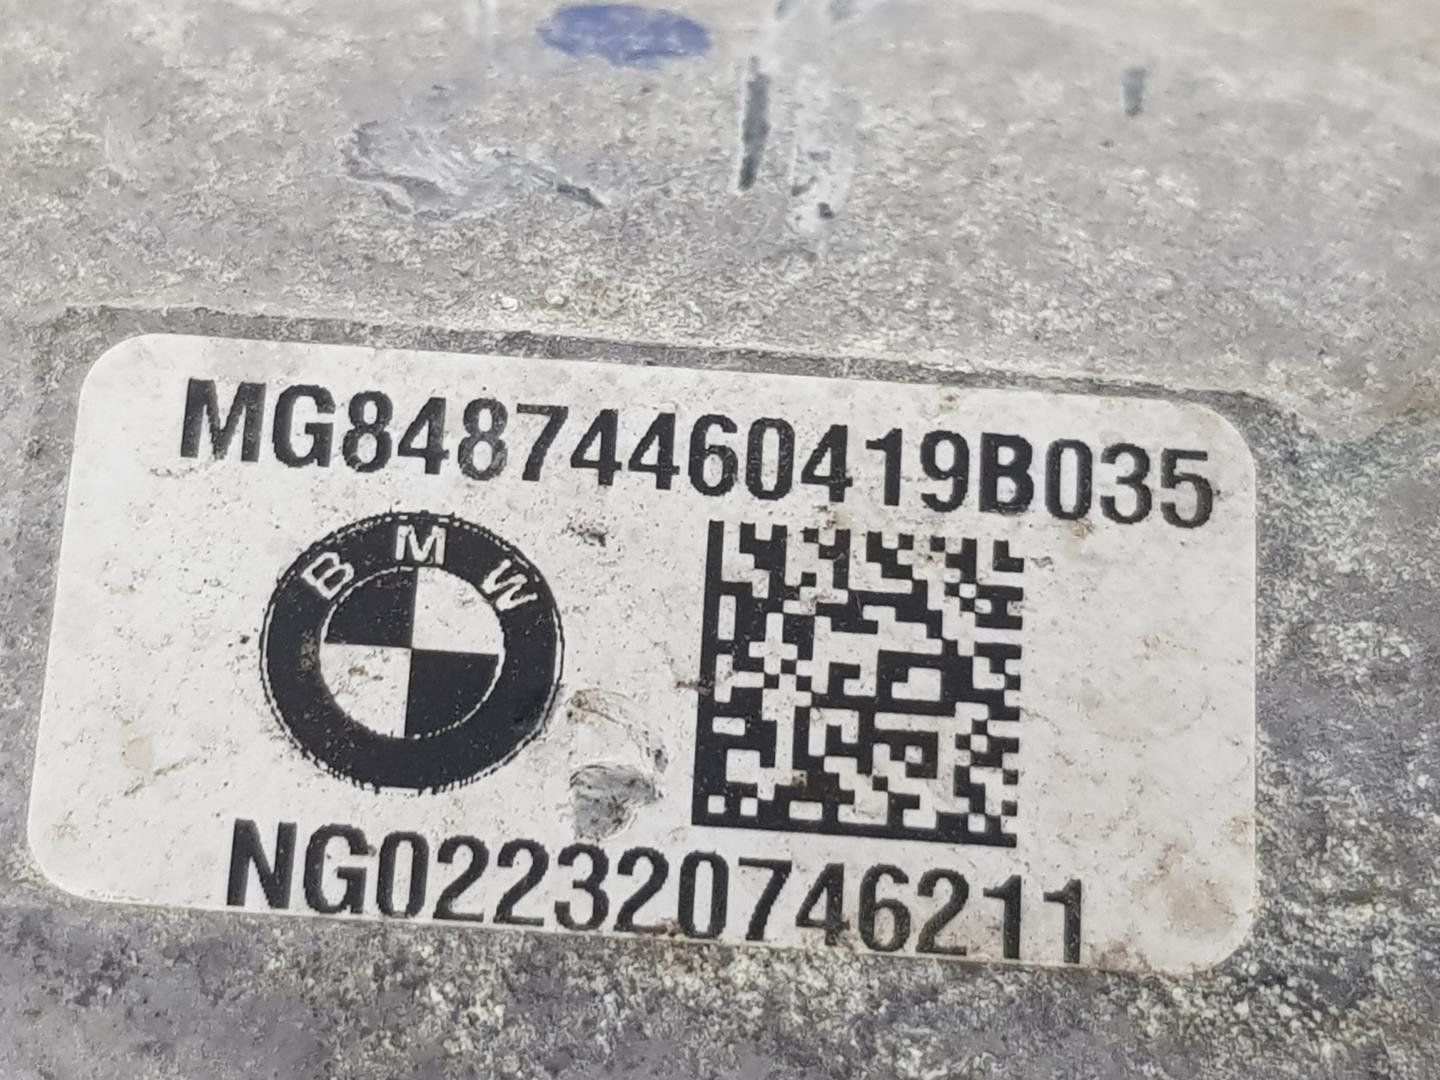 BMW X5 (G05) (2018-наст. время) Редуктор передний 84874460419, NG022320746211, 1212CD 24135376